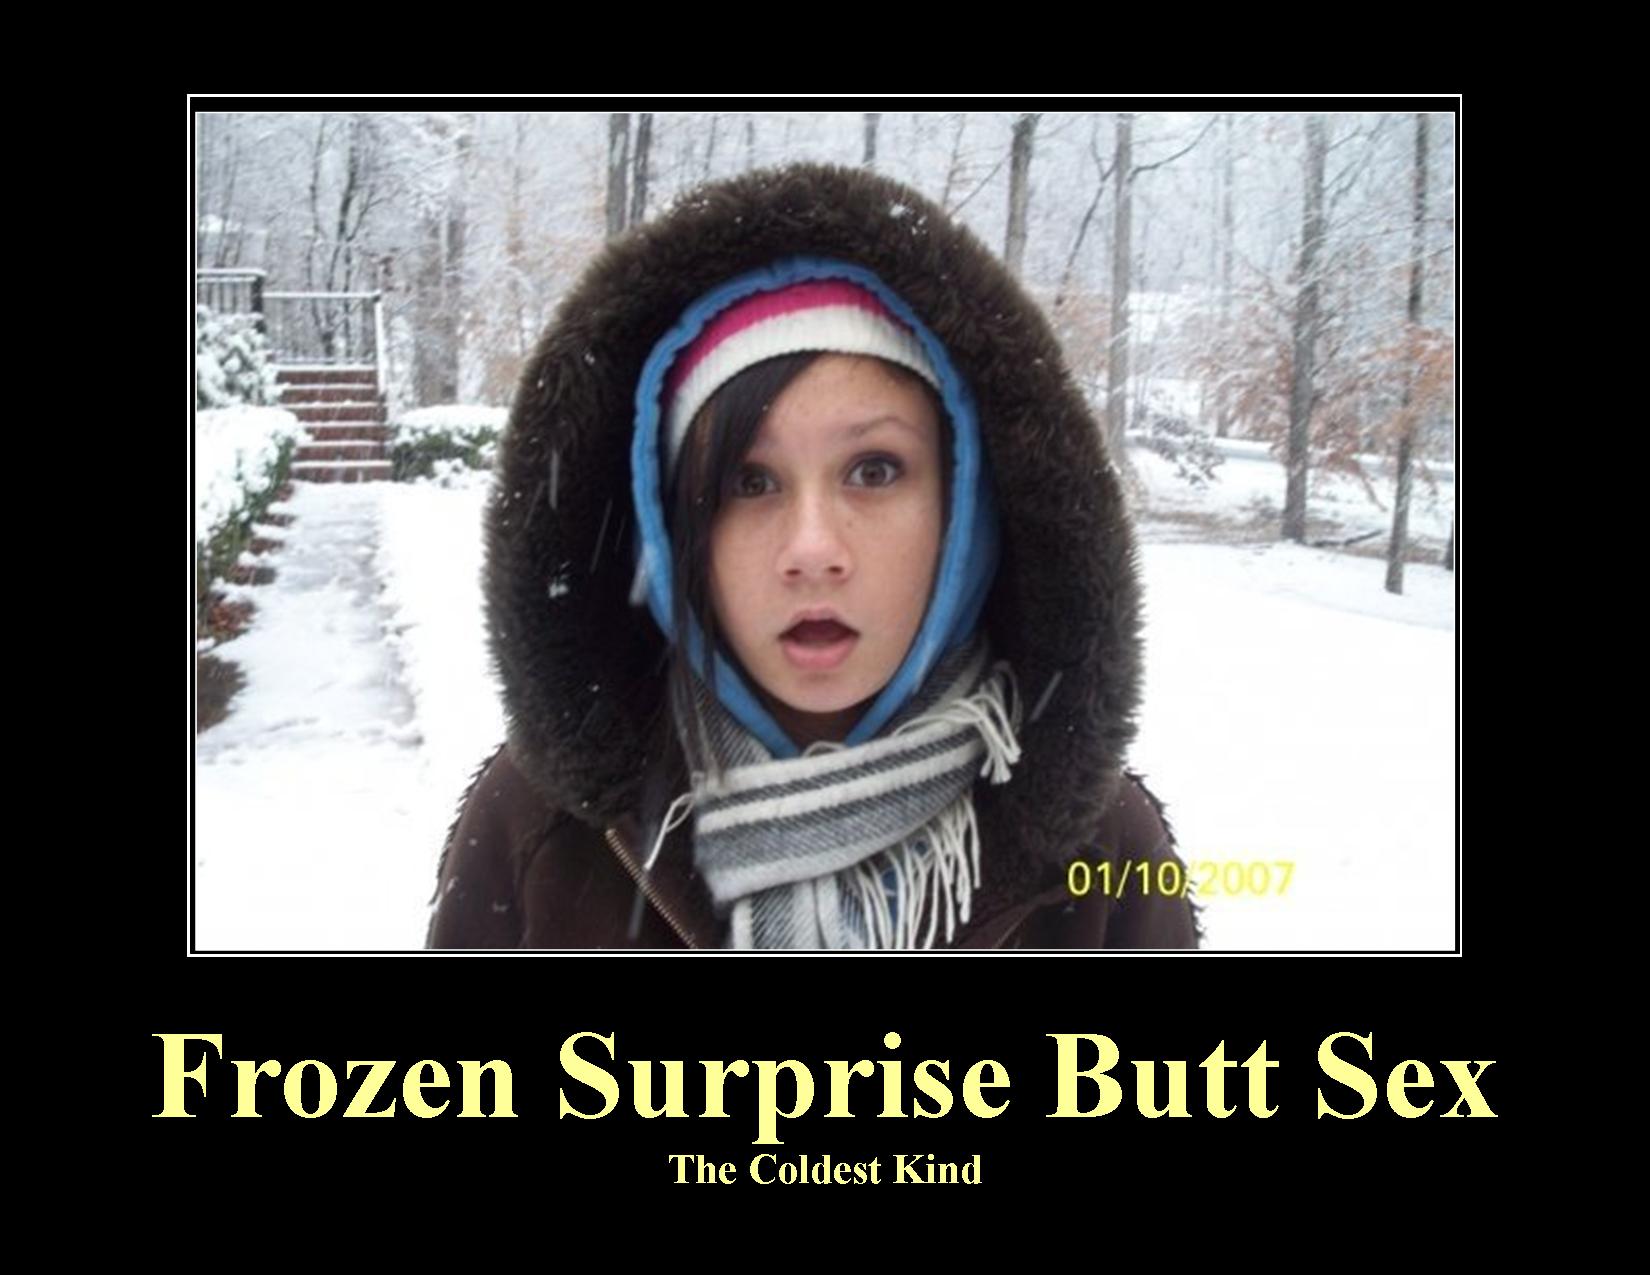 Demotivational poster of surprise butt sex